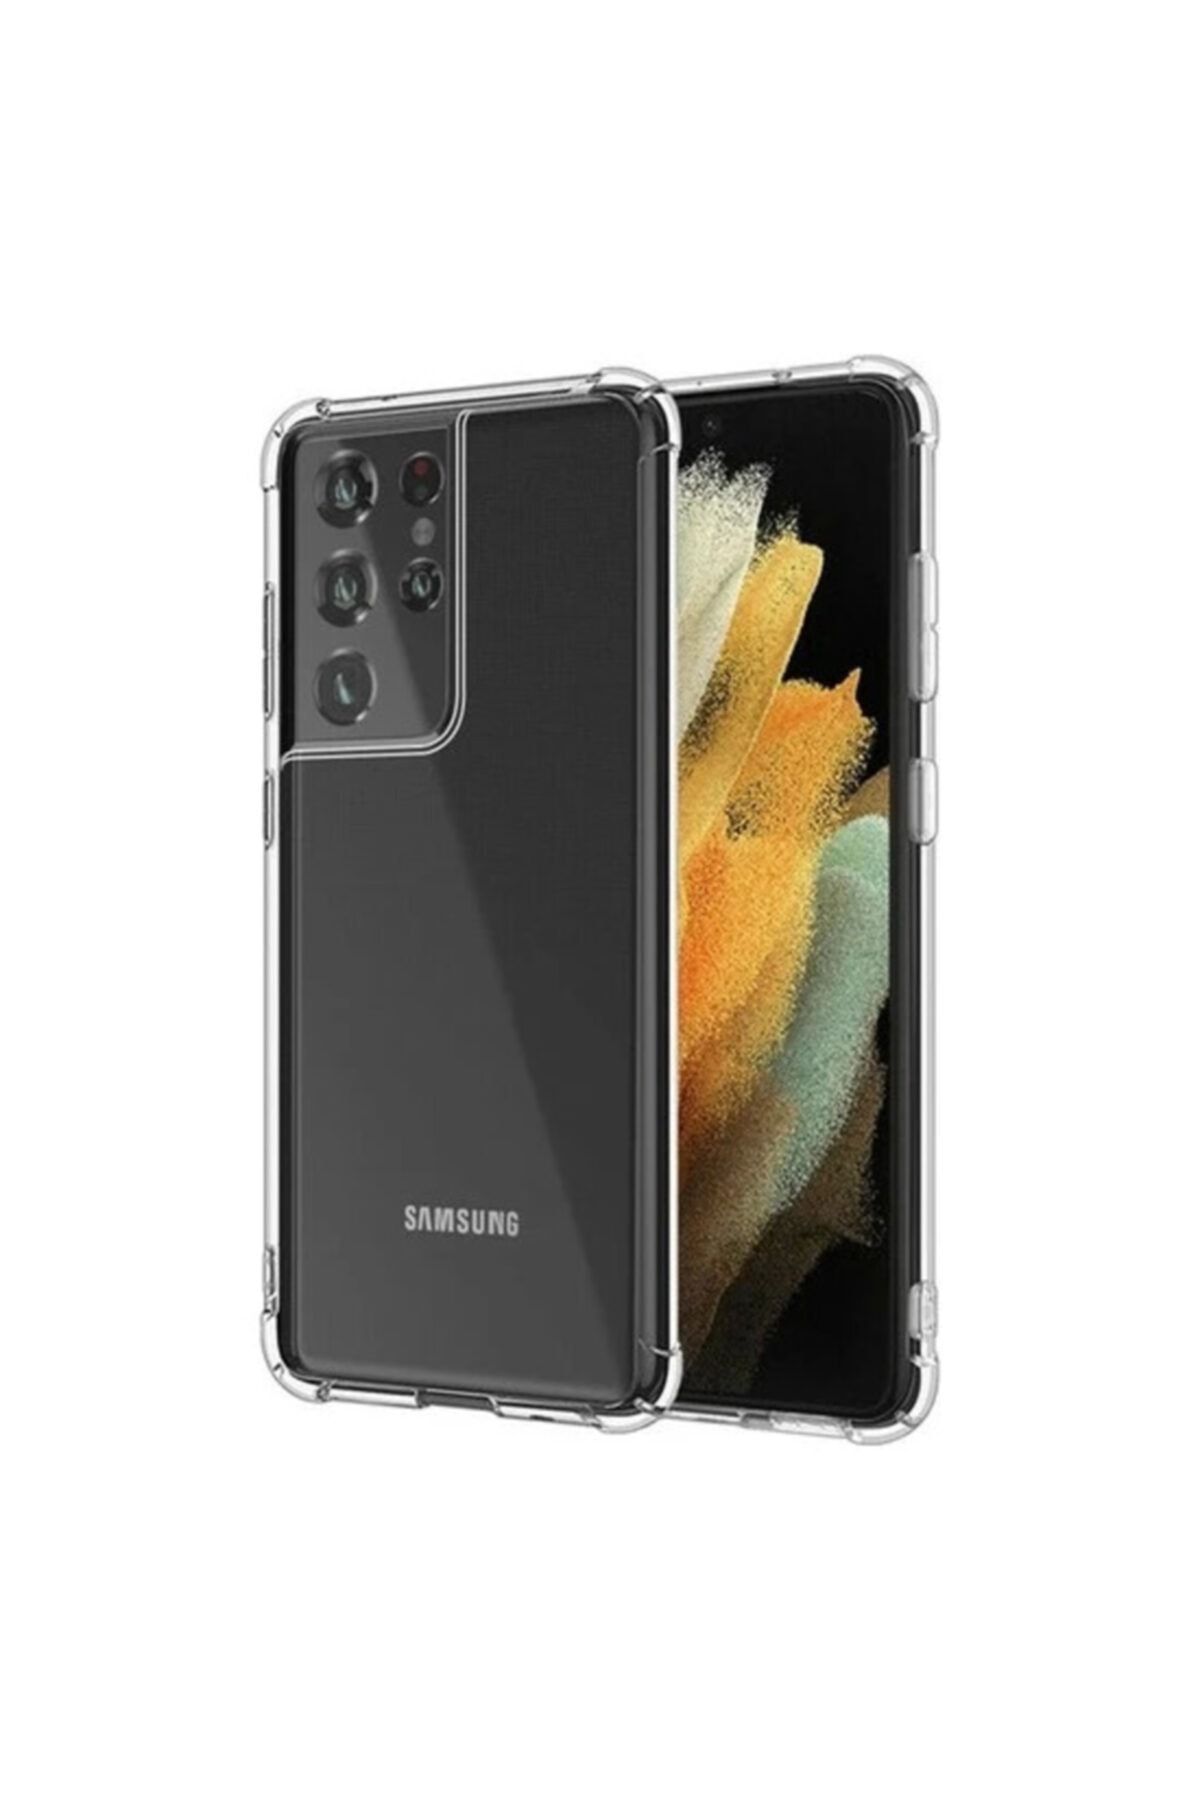 Fibaks Samsung Galaxy S21 Ultra Uyumlu Kılıf Köşe Korumalı Anti Şok Sert Silikon